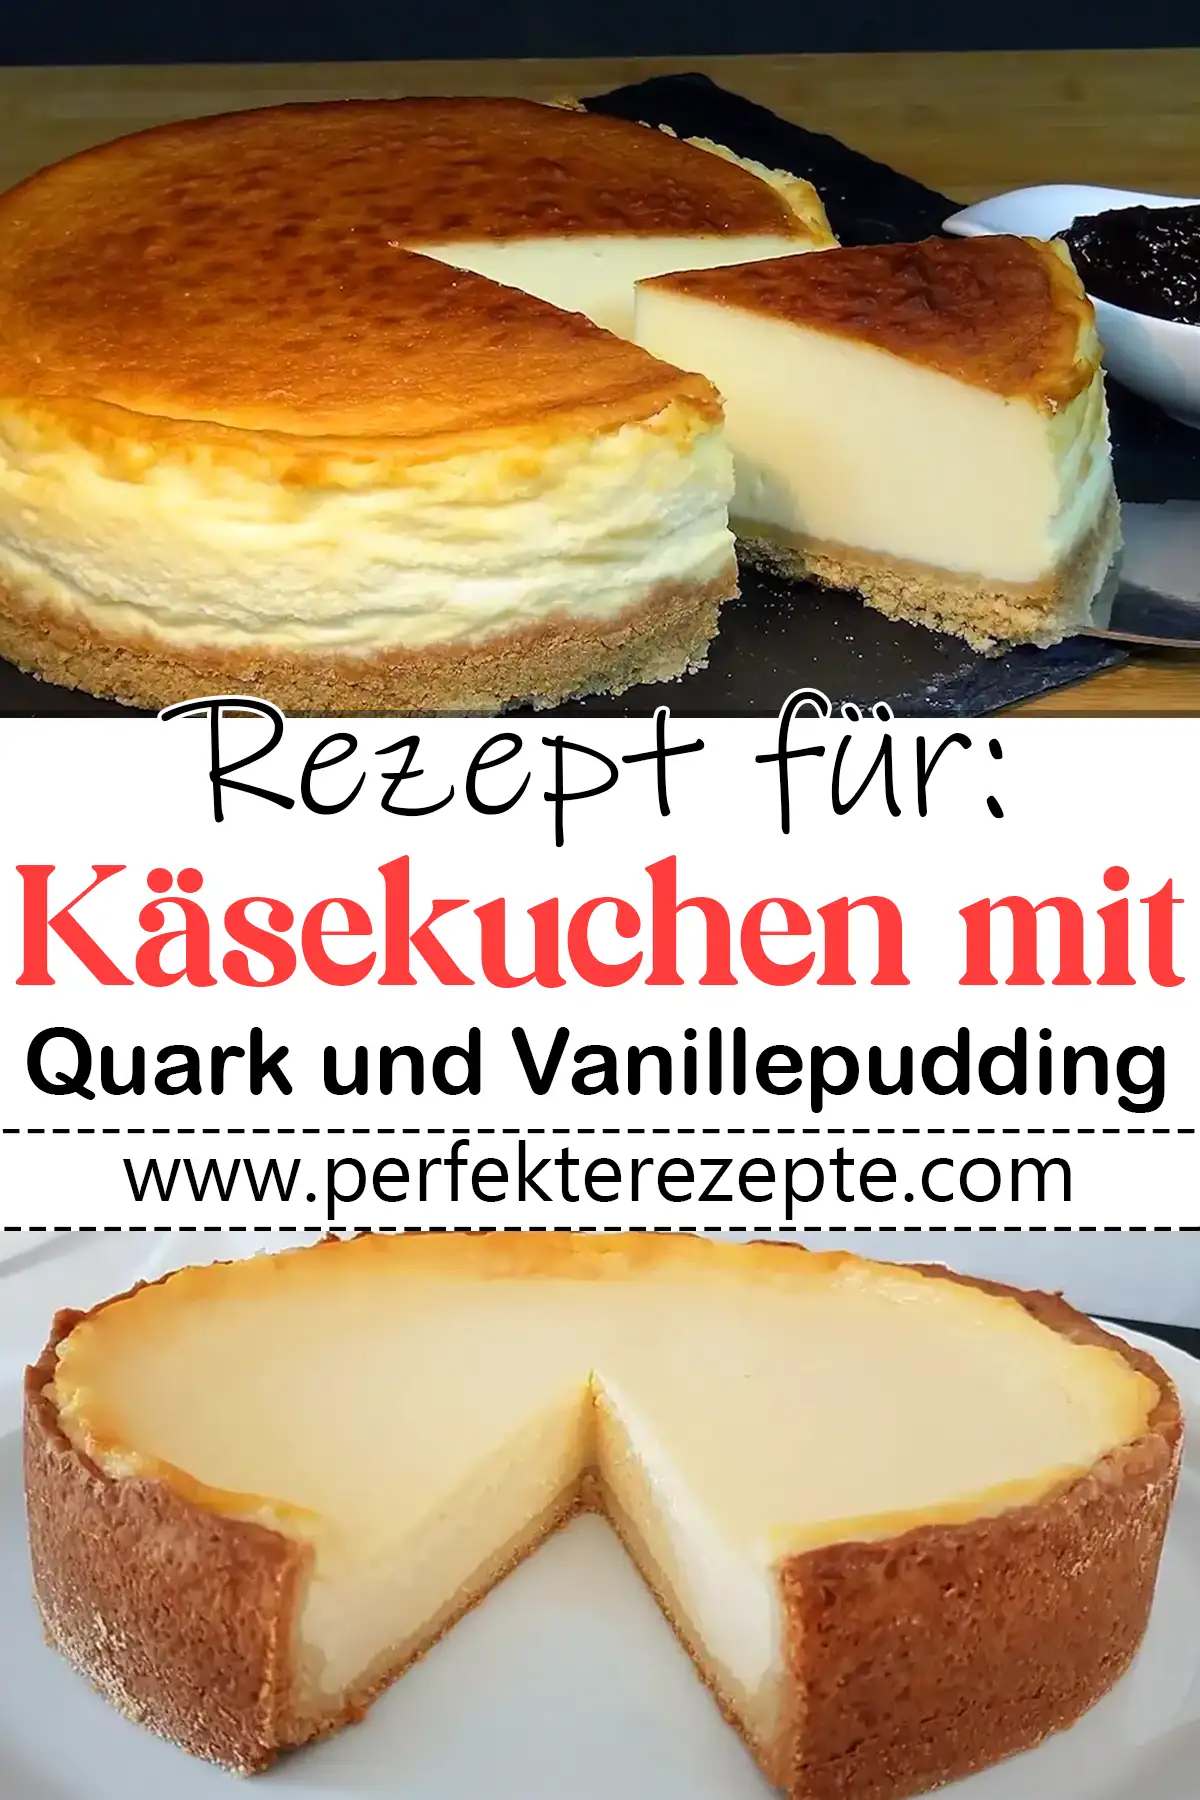 Käsekuchen mit Quark und Vanillepudding!